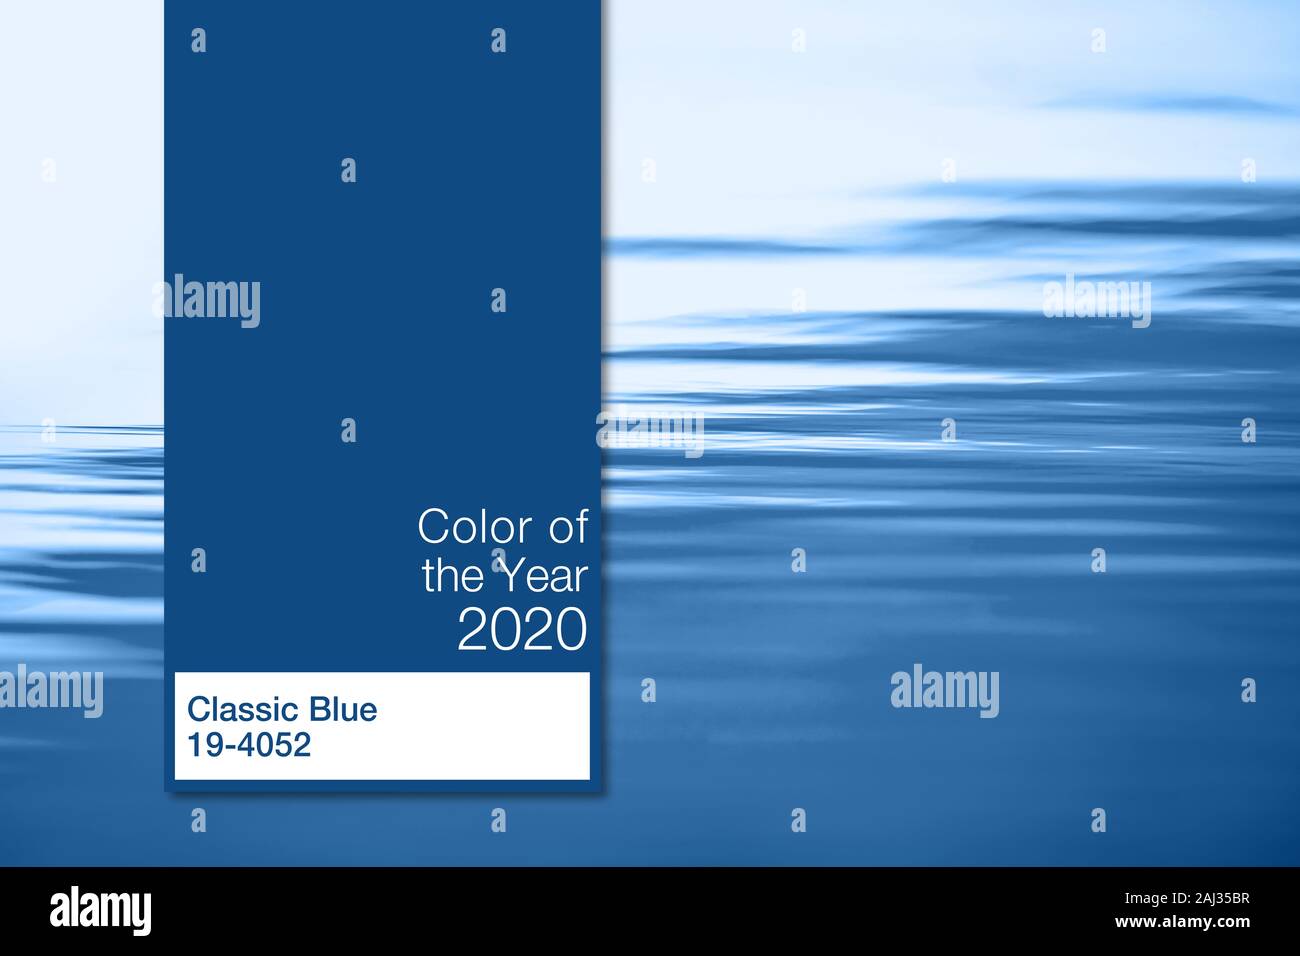 Color del año 2020, Azul clásico, la tendencia muestra la paleta de colores, la plantilla guía libro de muestras aisladas en el mar azul de fondo con espacio de copia Foto de stock